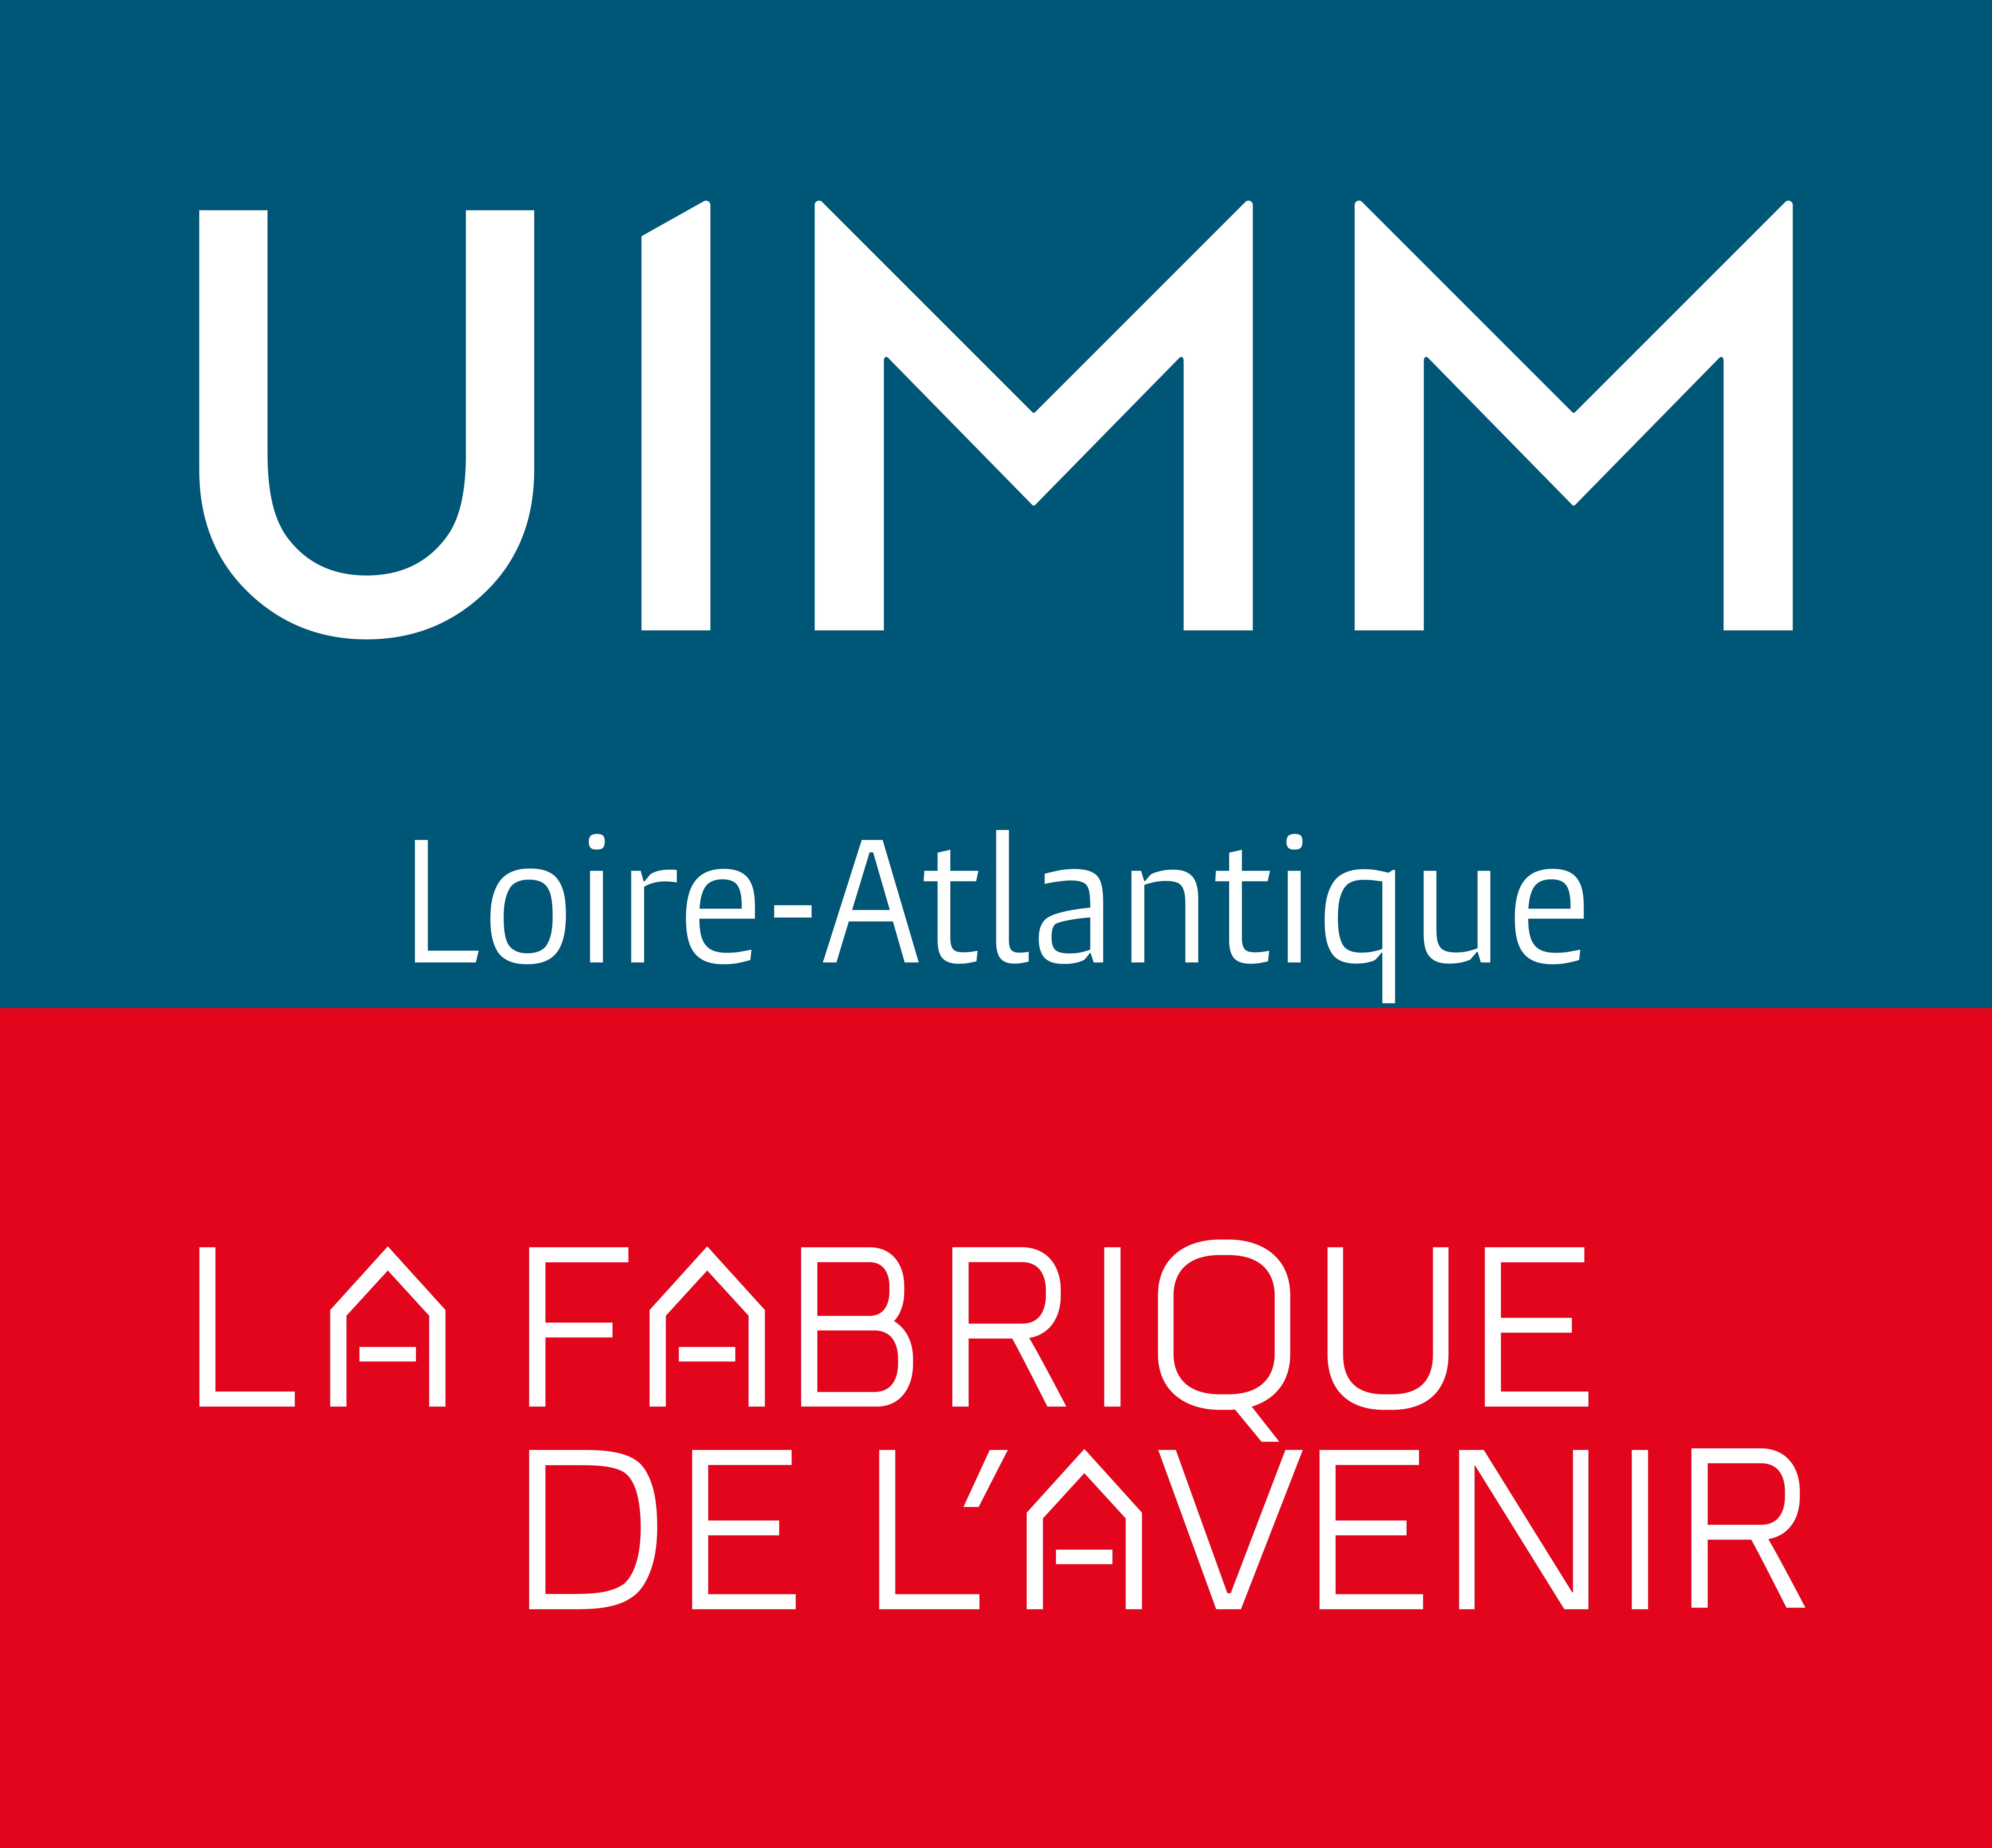 L¿Union des Industries et Métiers de la Métallurgie Loire-Atlantique (UIMM) (UIMM LOIRE-ATLANTIQUE)